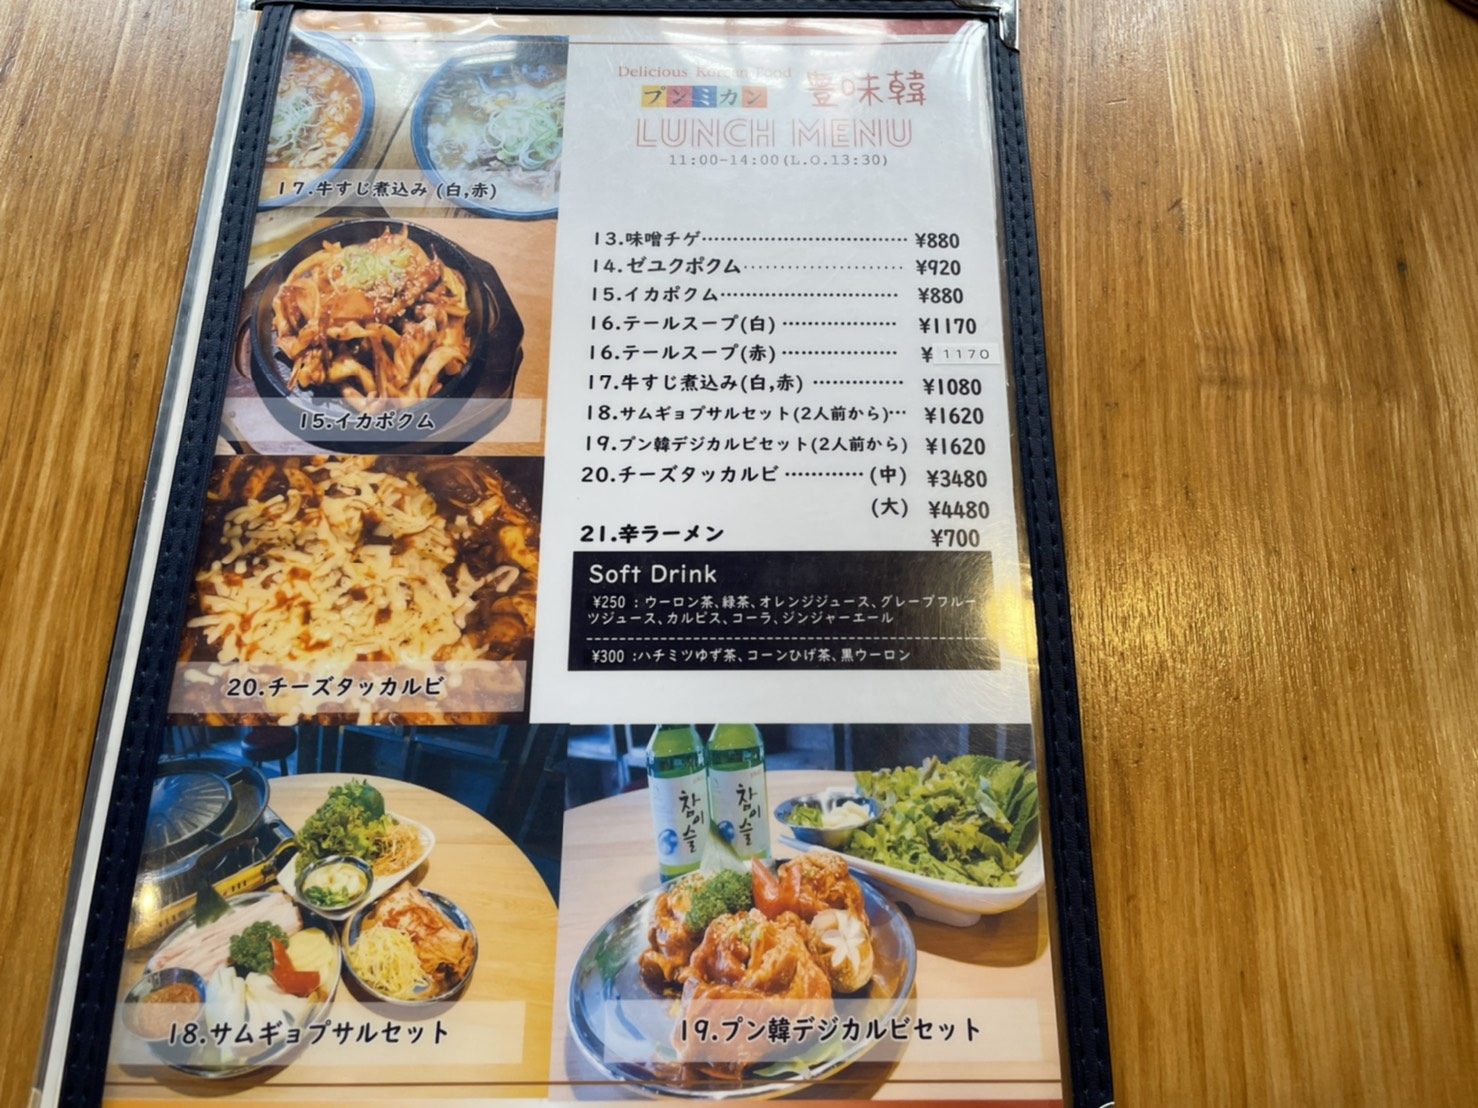 金山の韓国料理専門店 プンミカン は本場韓国でしかいただけないような珍しい料理が楽しめる韓国料理専門店